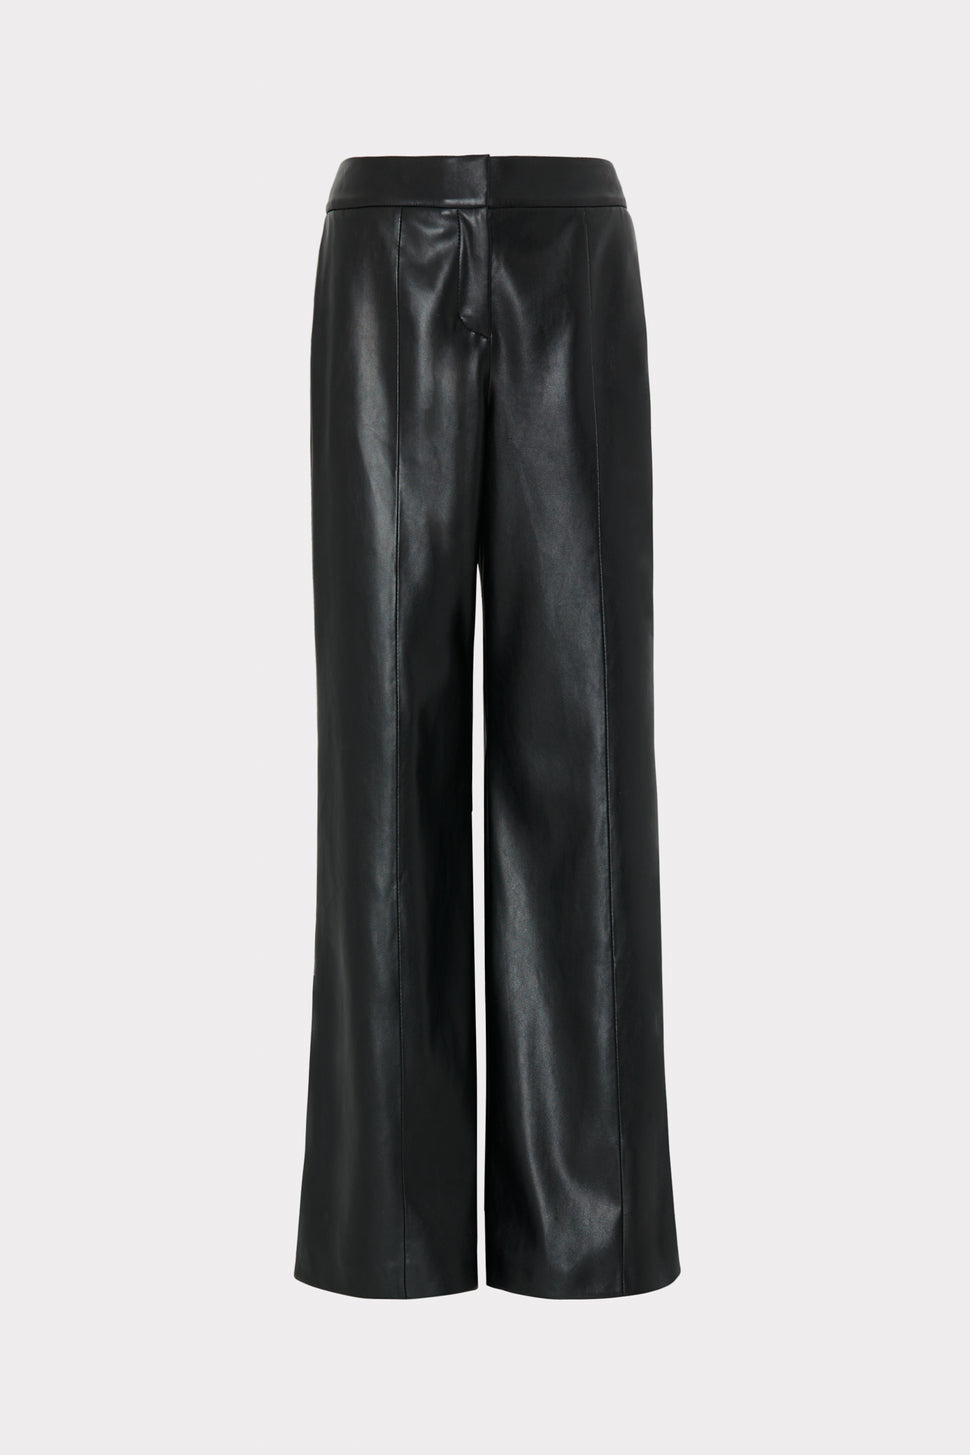 Nash Vegan Leather Pants in Black - MILLY in Black